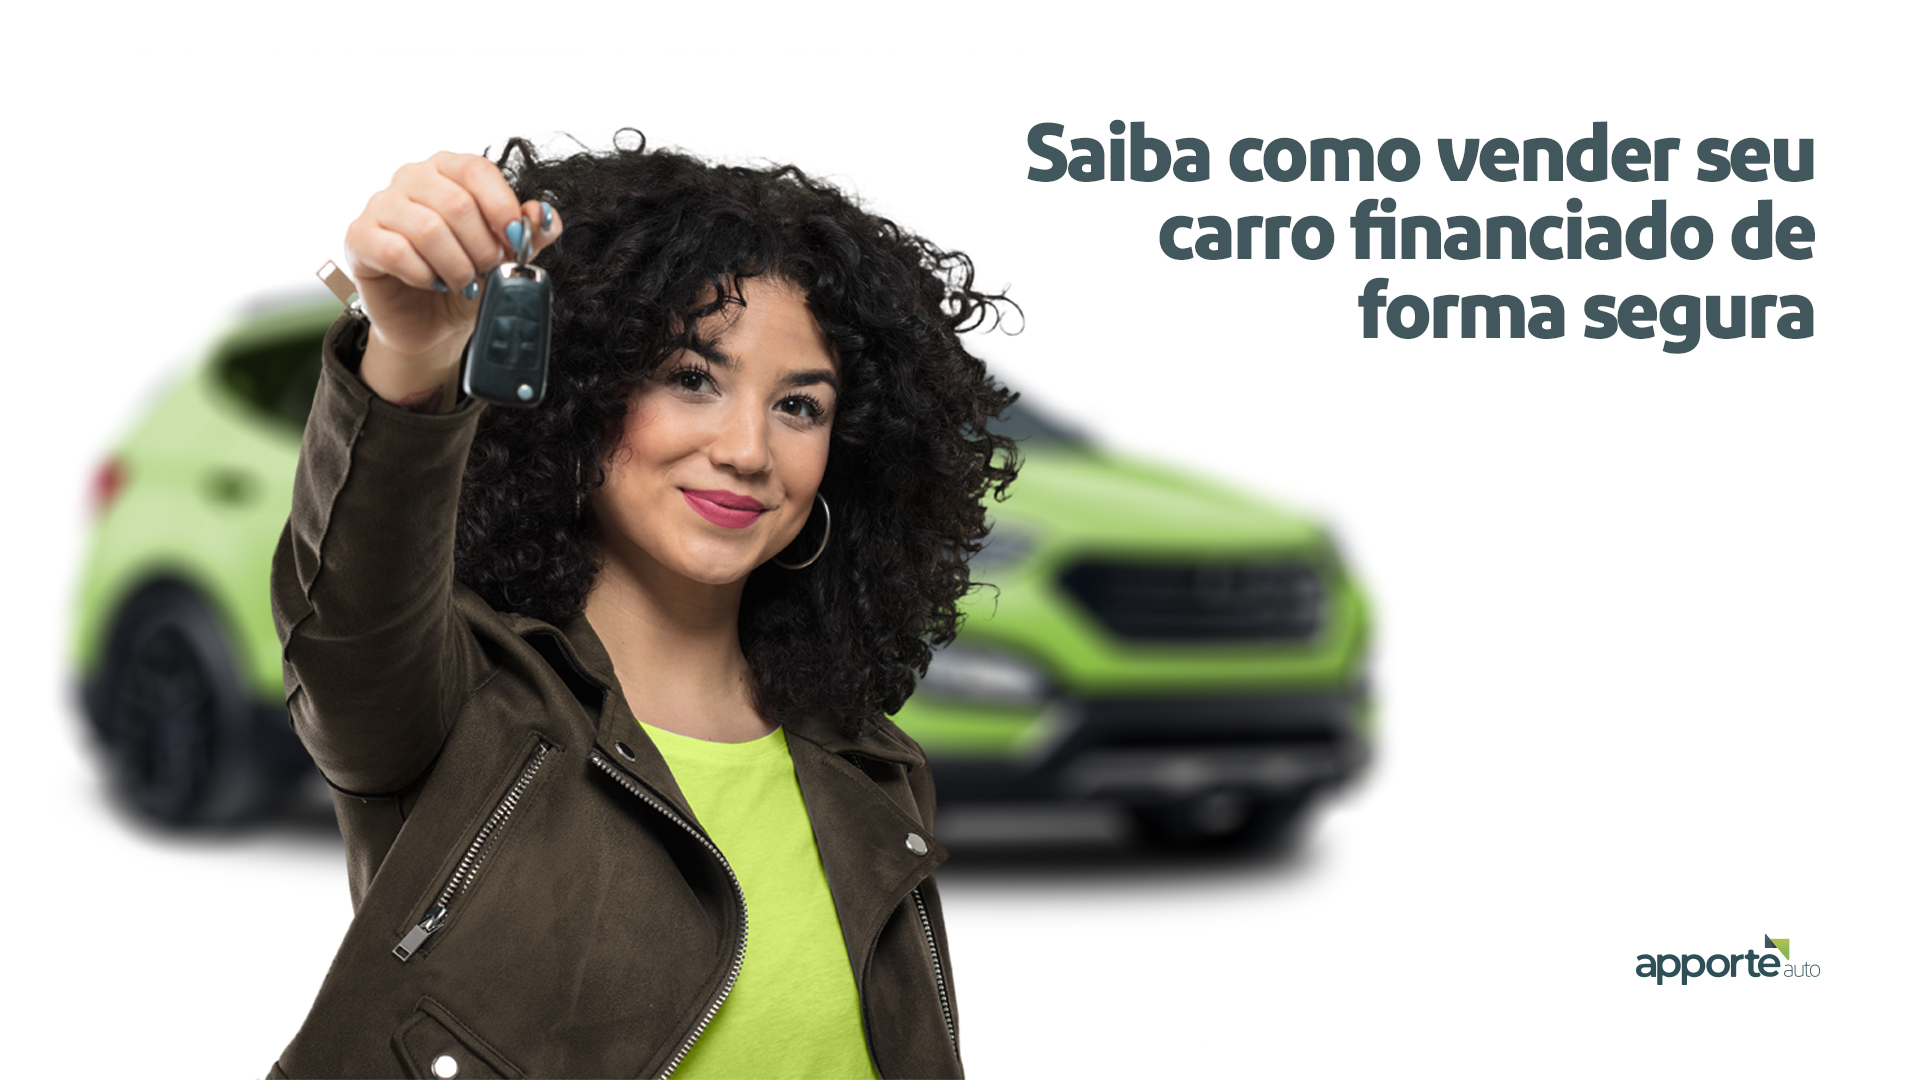 Existem duas formas de vender um carro financiado: à vista ou com repasse do financiamento. | Foto: Divulgação